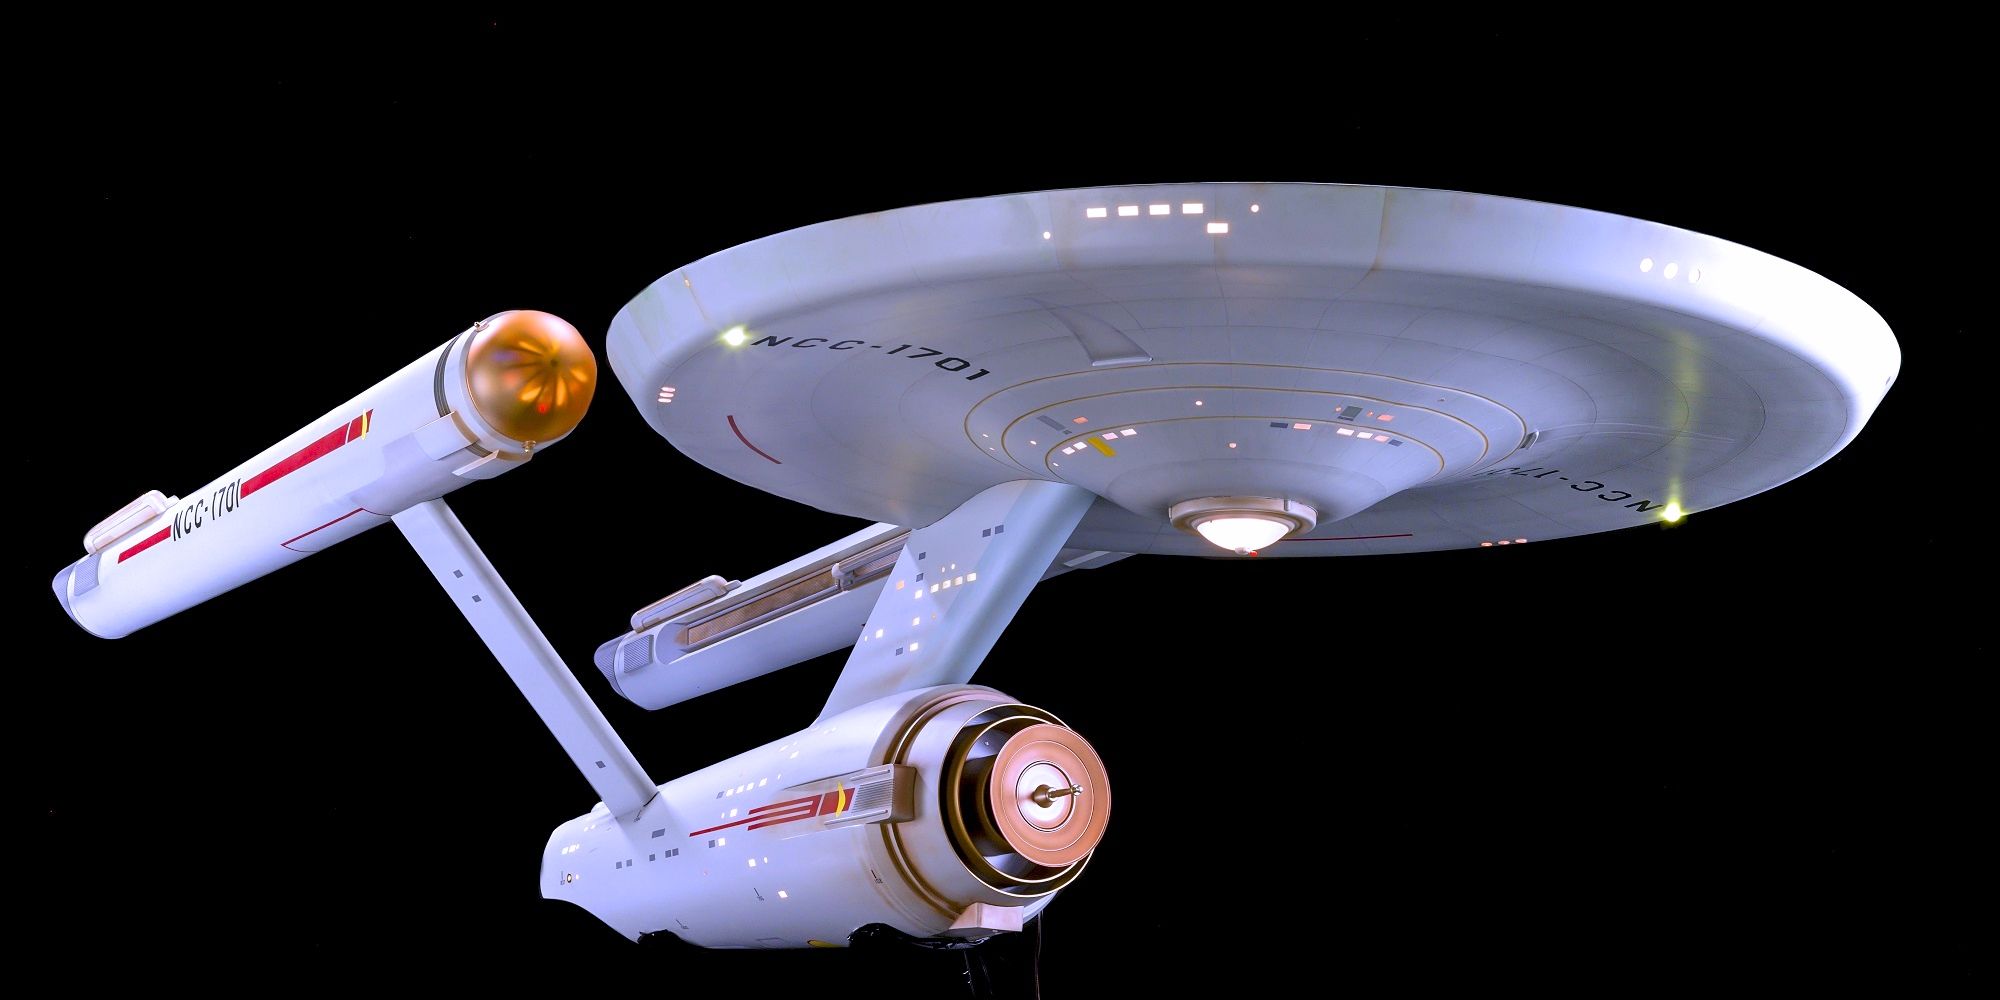 The original USS Star Trek Enterprise model by Matt Jeffries.